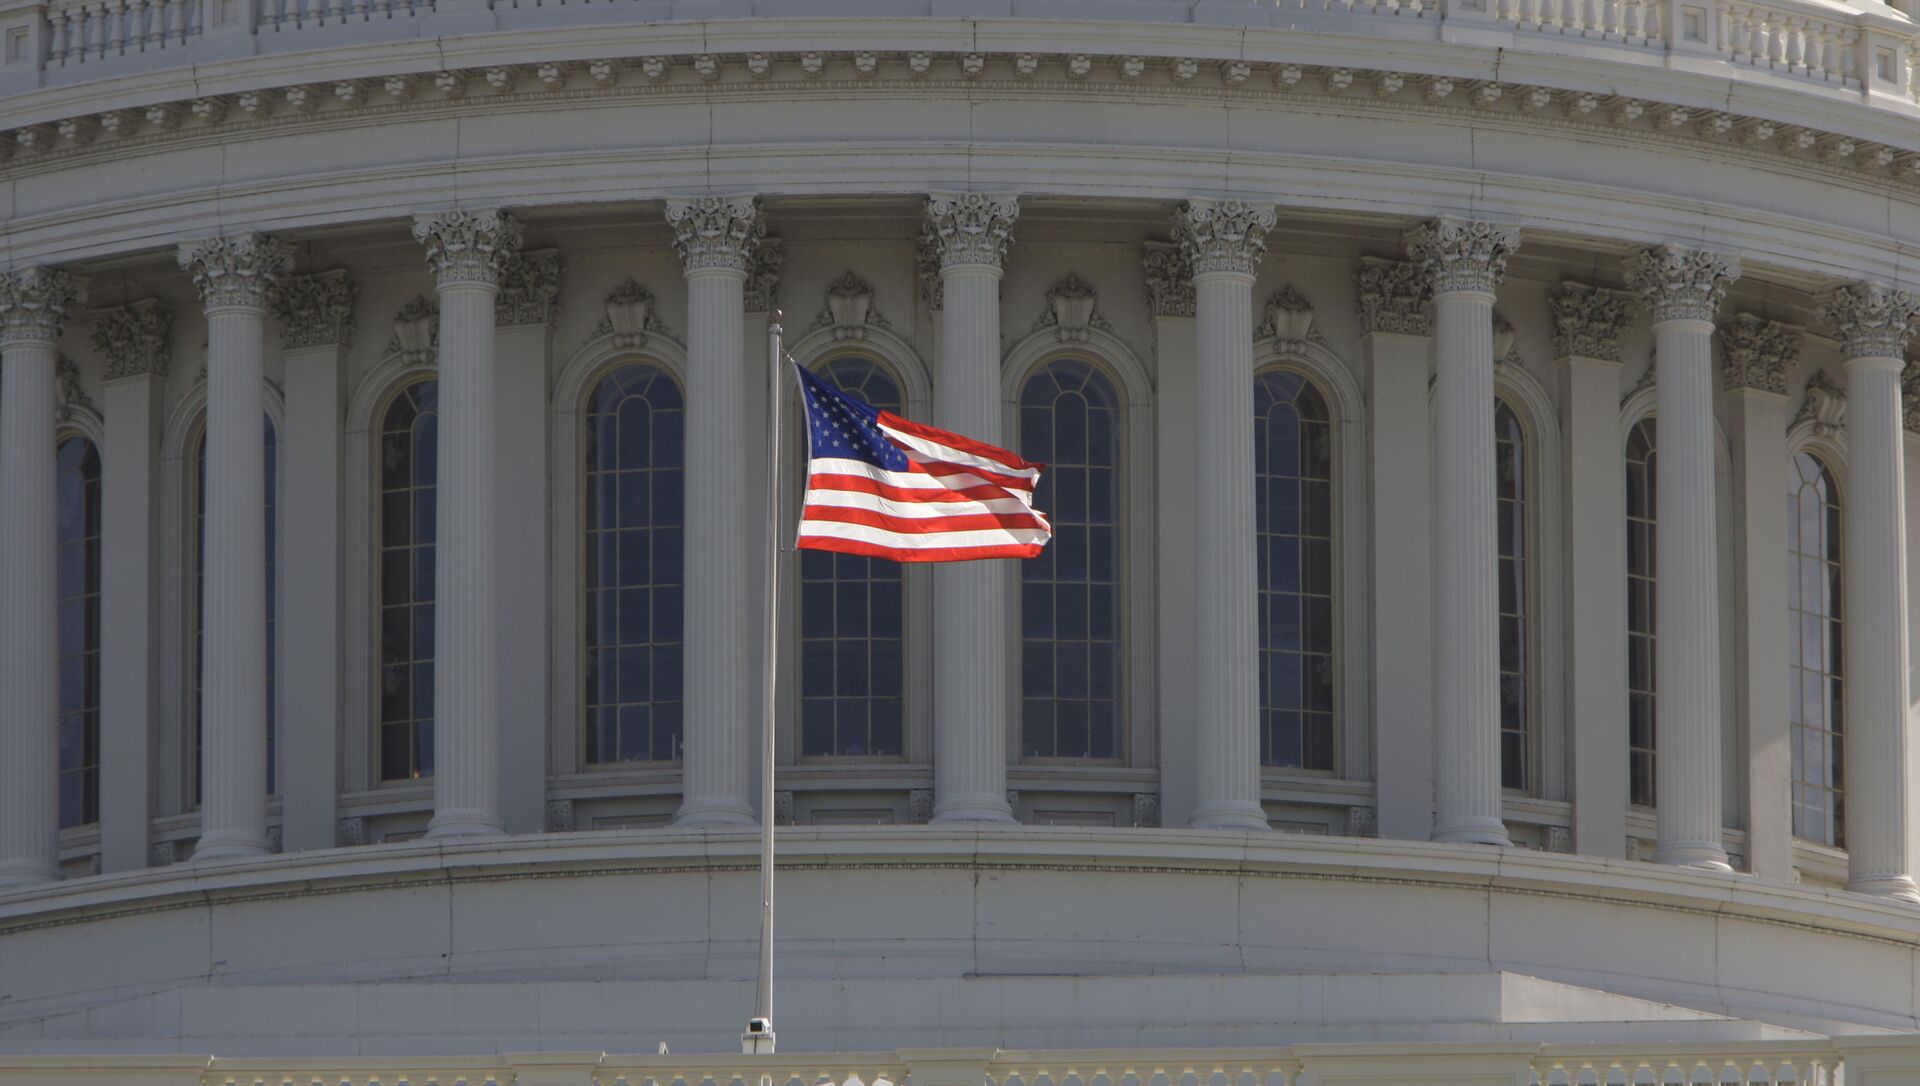 Капитолий, здание в Вашингтоне, где заседает конгресс США - Sputnik Абхазия, 1920, 18.07.2021